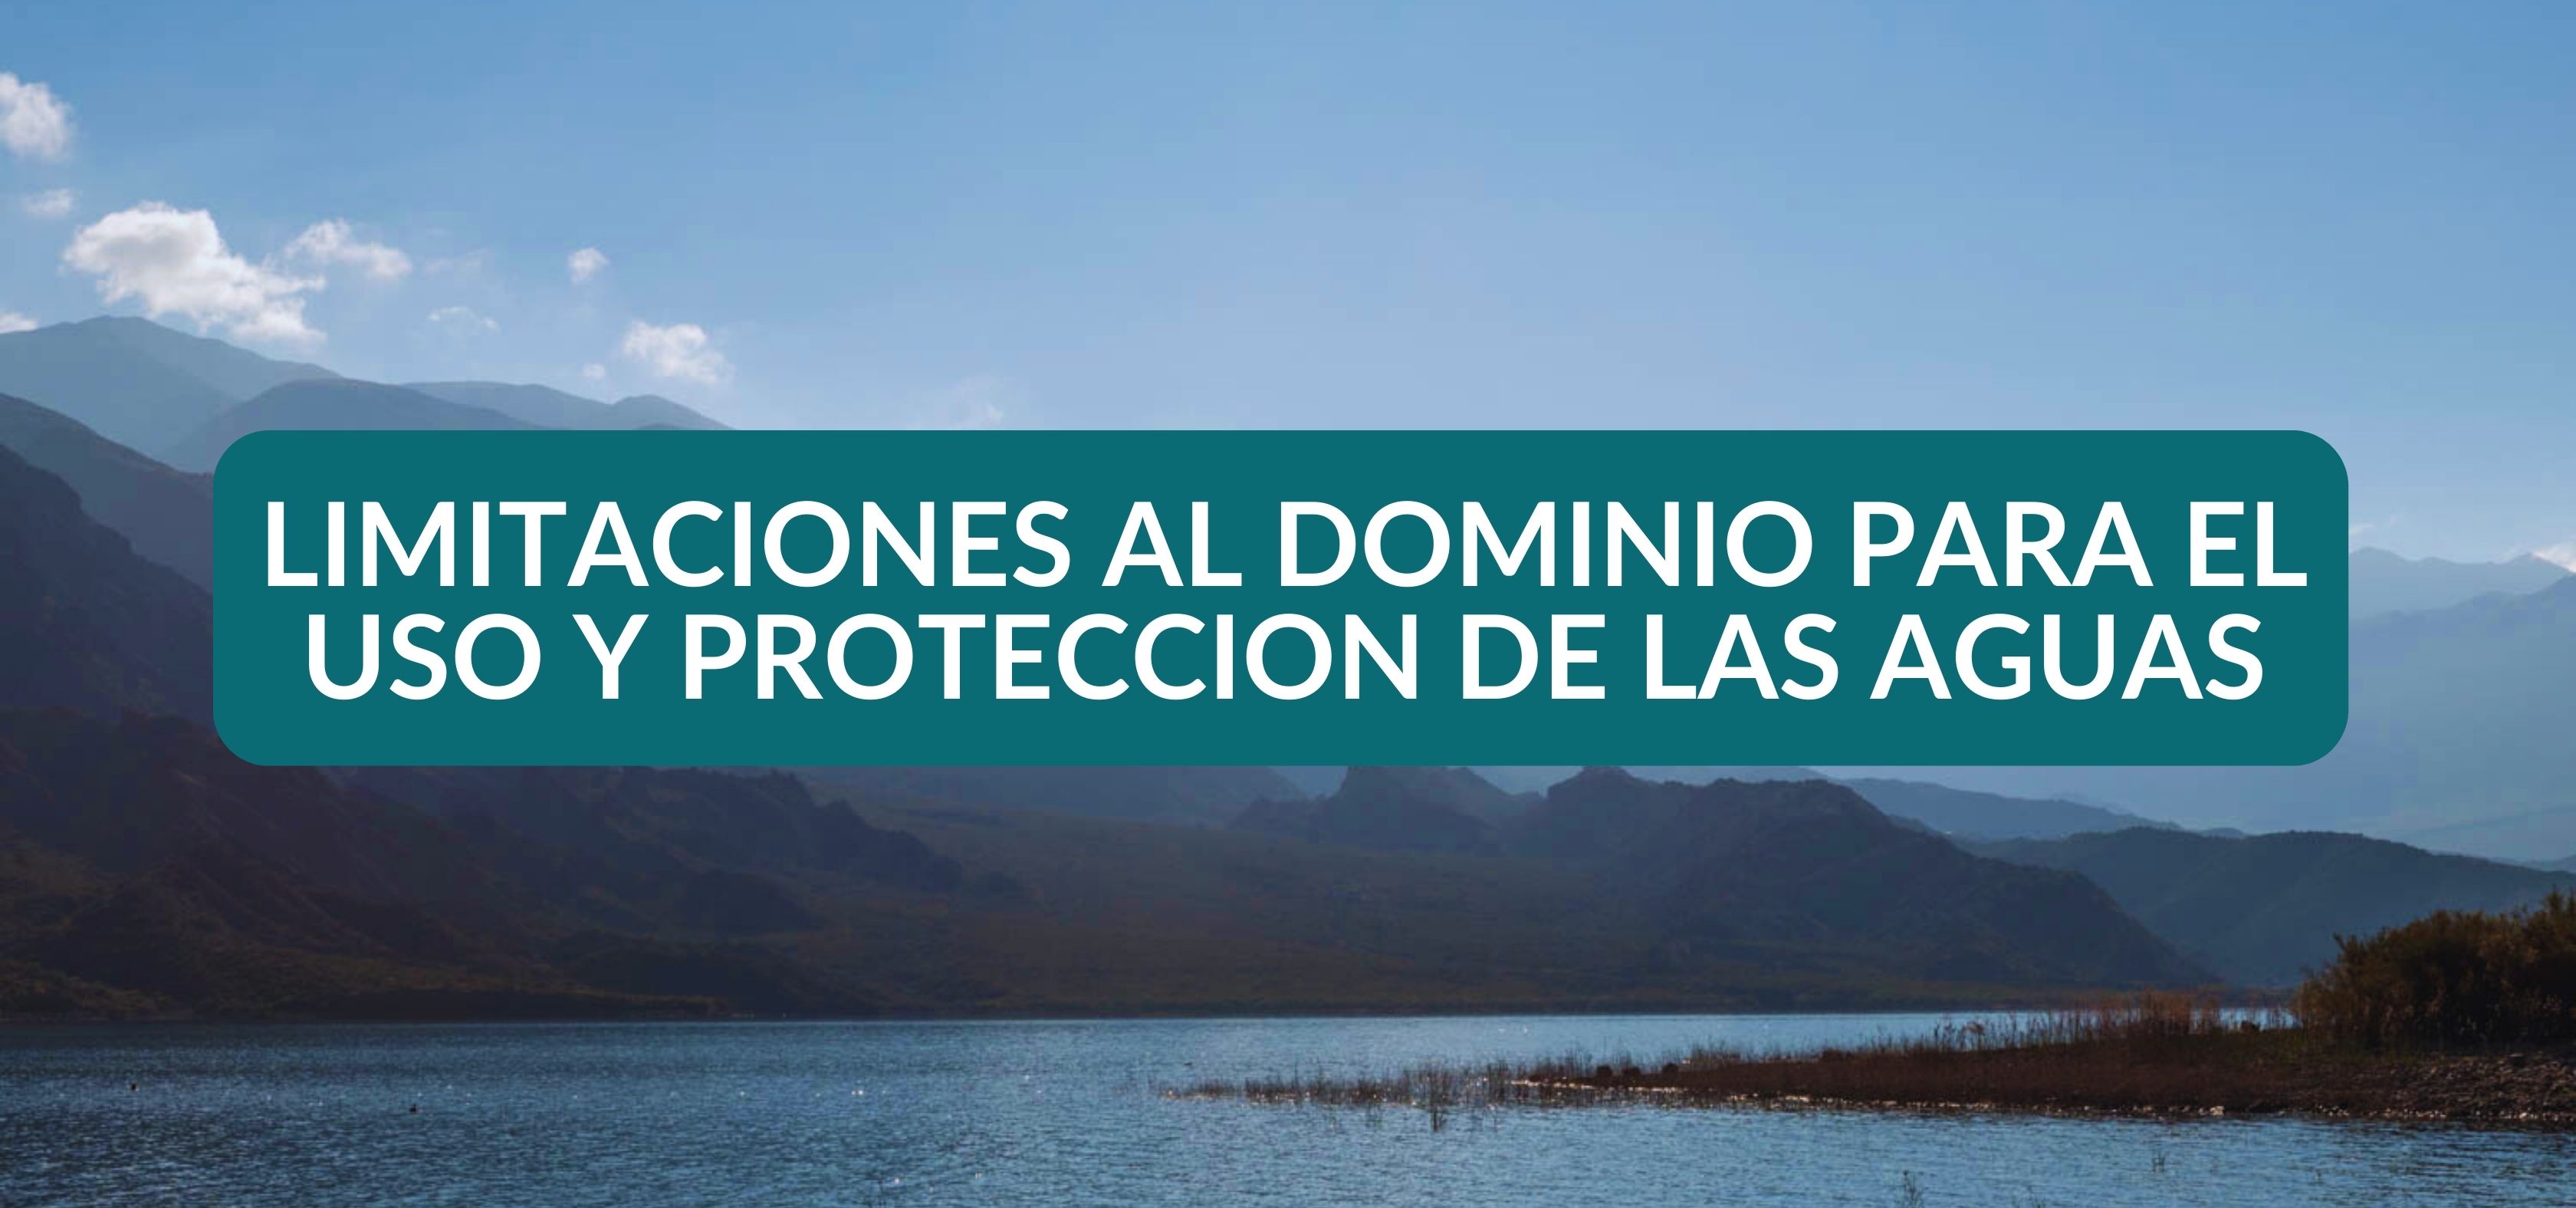 Título VIII. Limitaciones al dominio para el uso y protección de las aguas